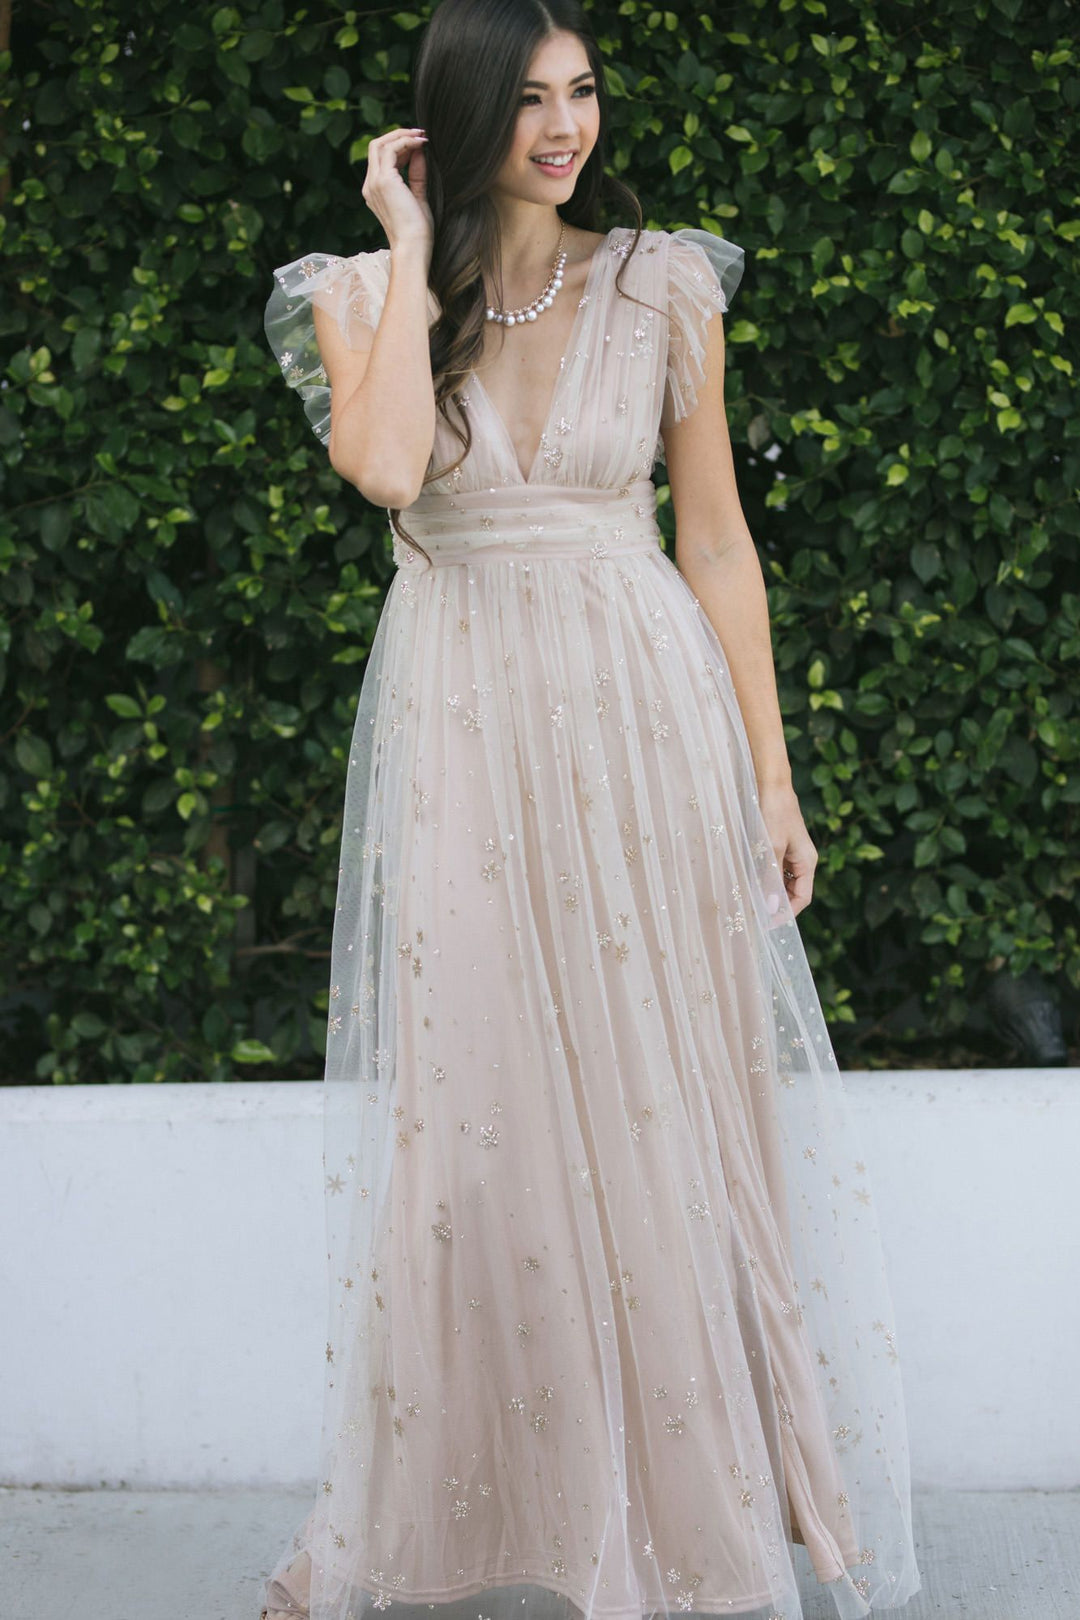 Midi Dress with Applique Details - Dana - Morning Lavender Online Boutique